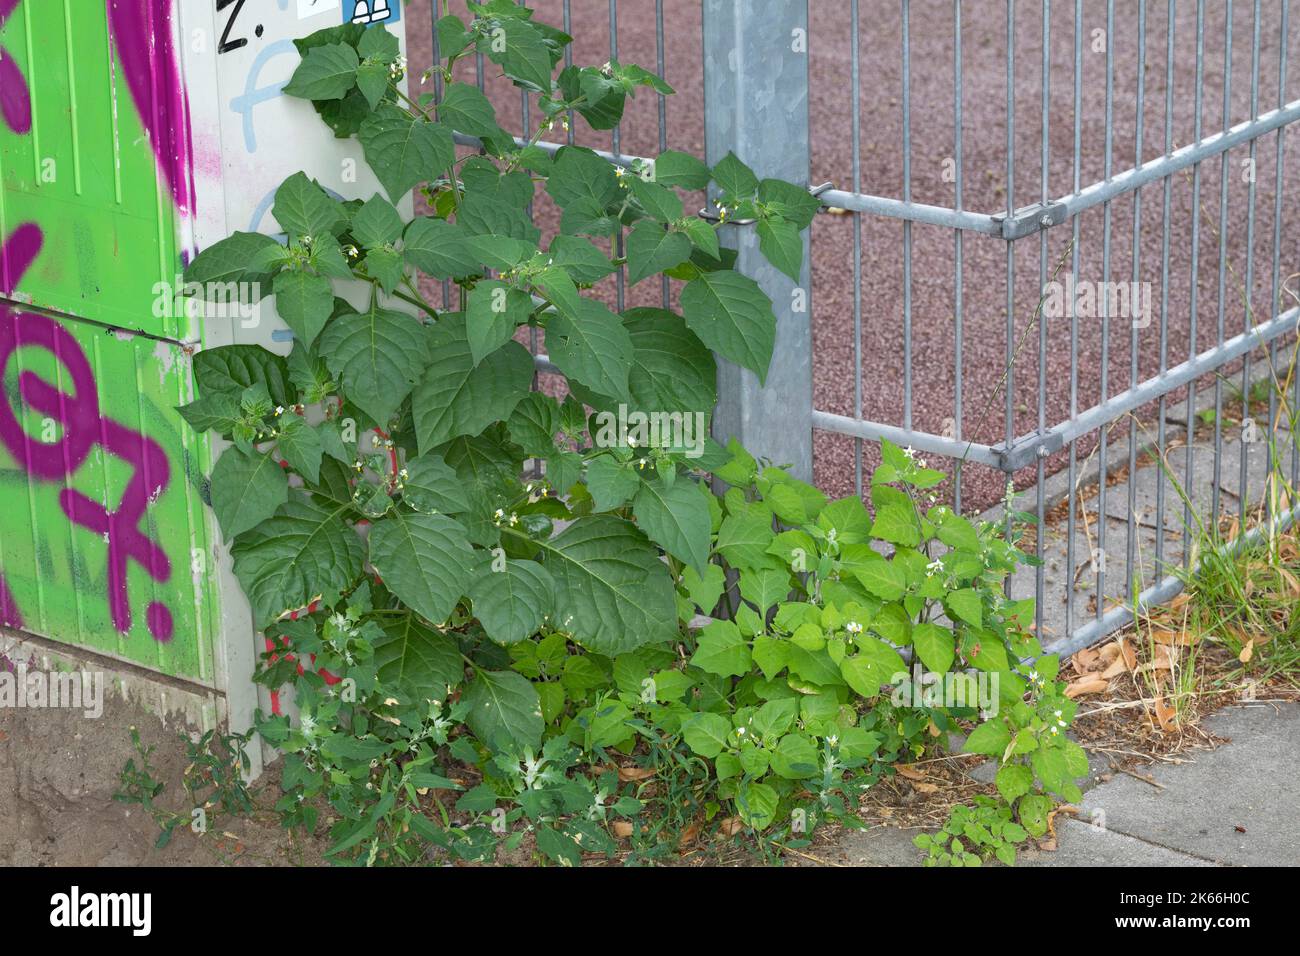 NightShade commun, Black NightShade (Solanum nigrum), croissant dans les espaces de chaussée à une clôture, Allemagne Banque D'Images